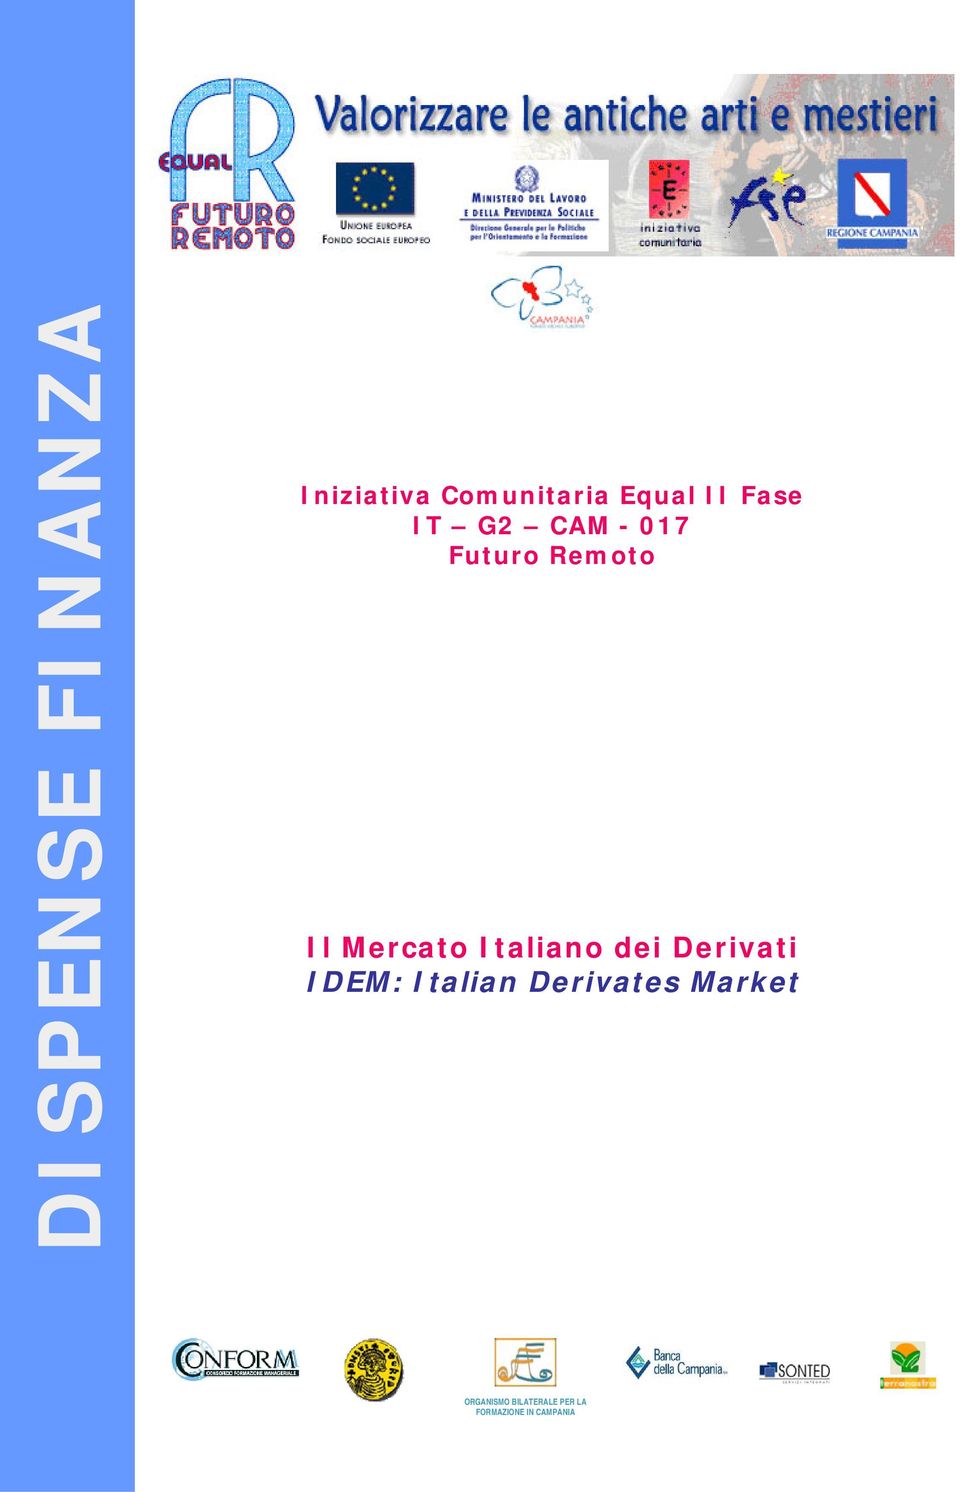 Italiano dei Derivati IDEM: Italian Derivates